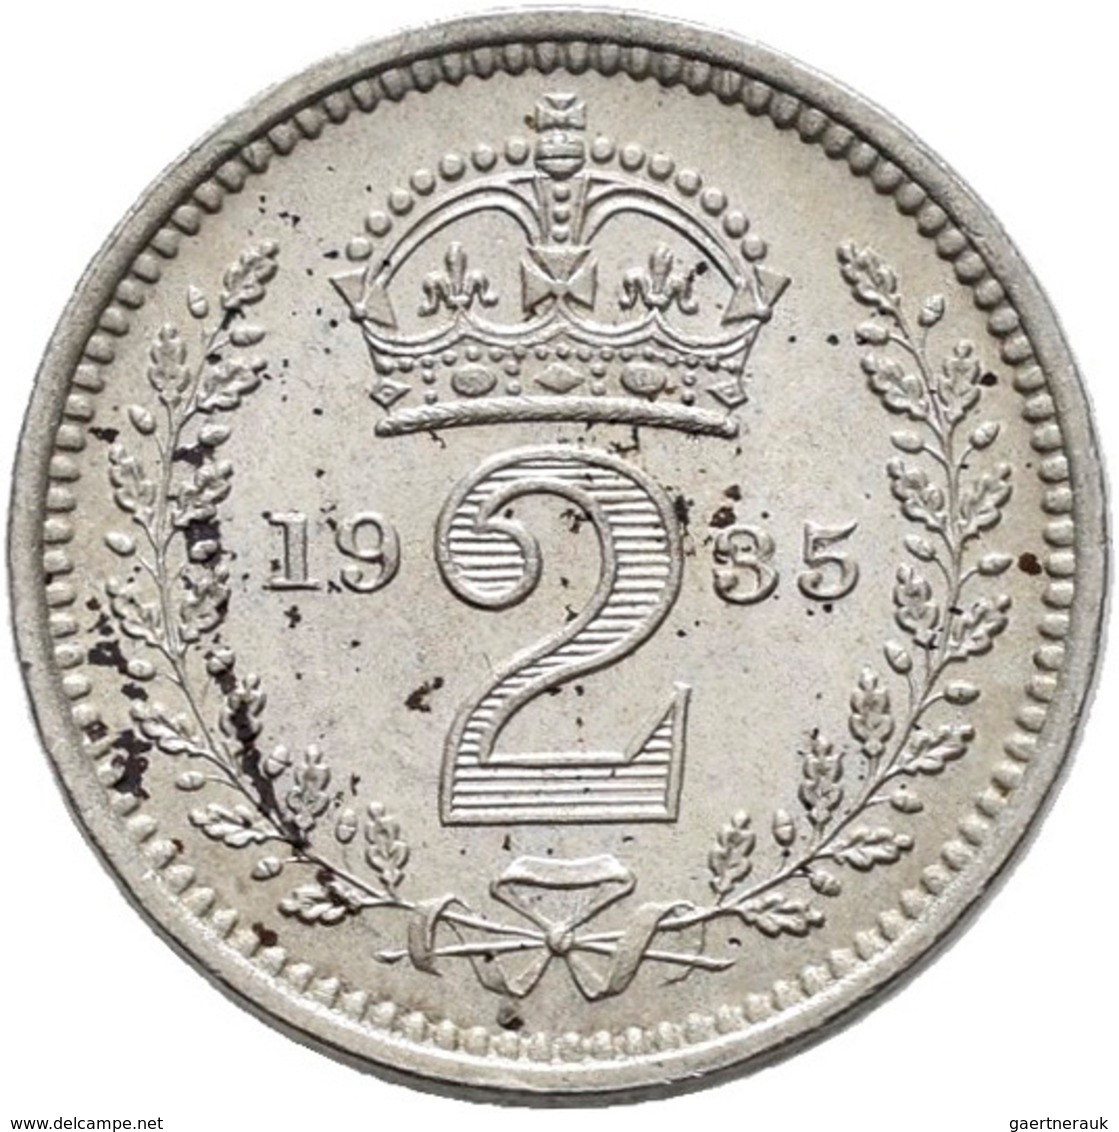 Großbritannien: Georg V. 1910-1936: 3 x Maundy Set 1,2,3,4 Pence 1911, 1923, 1935, vorzüglich, vorzü